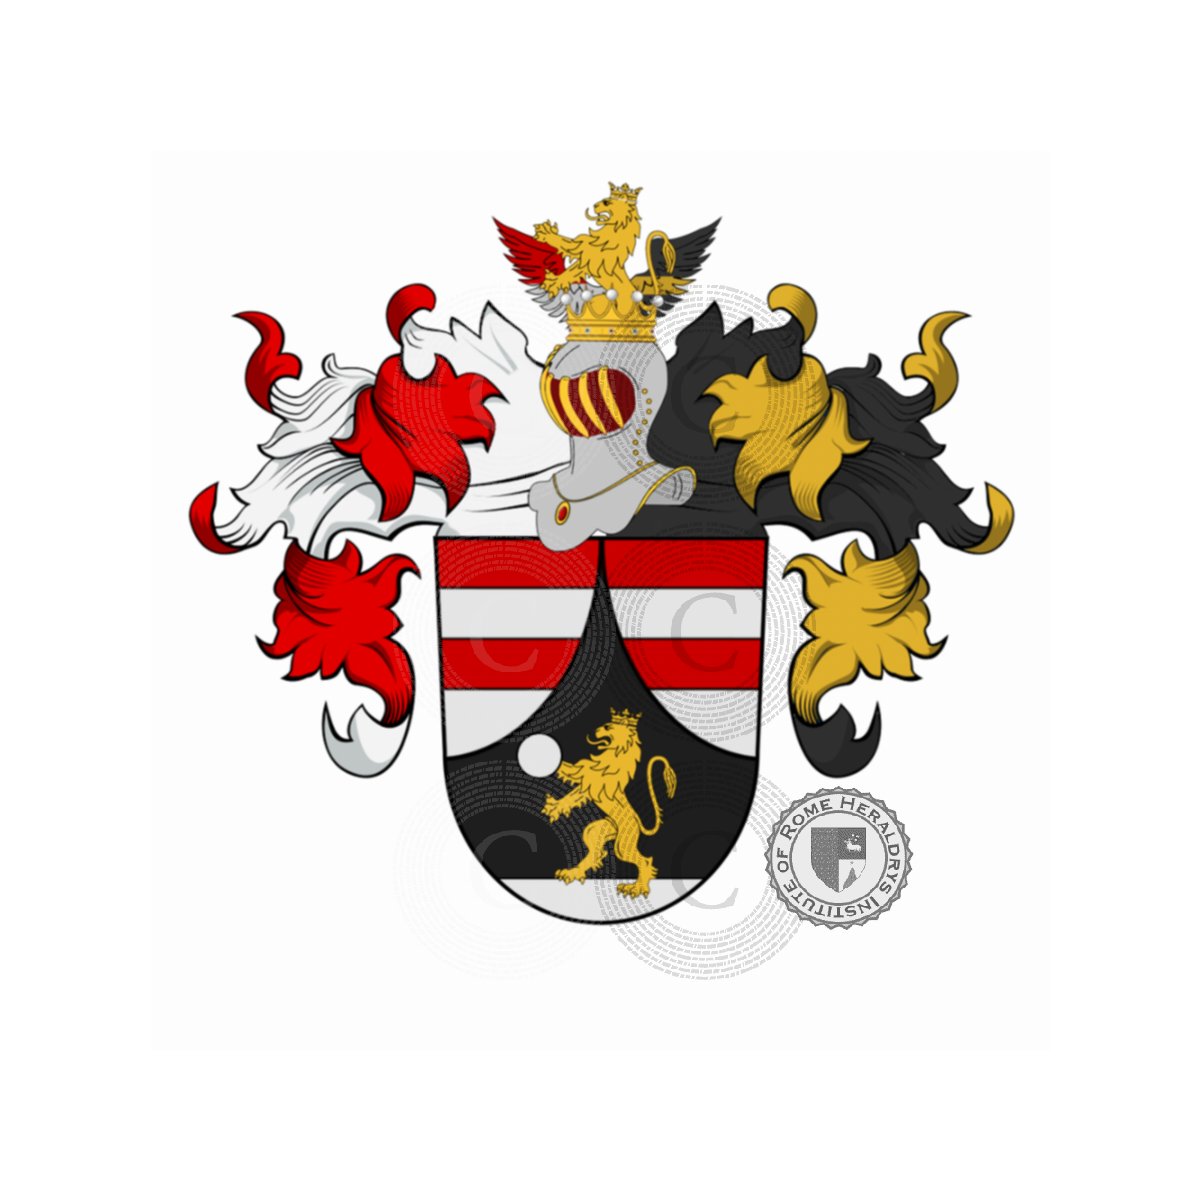 Wappen der FamilieTuller, Duller,Taller